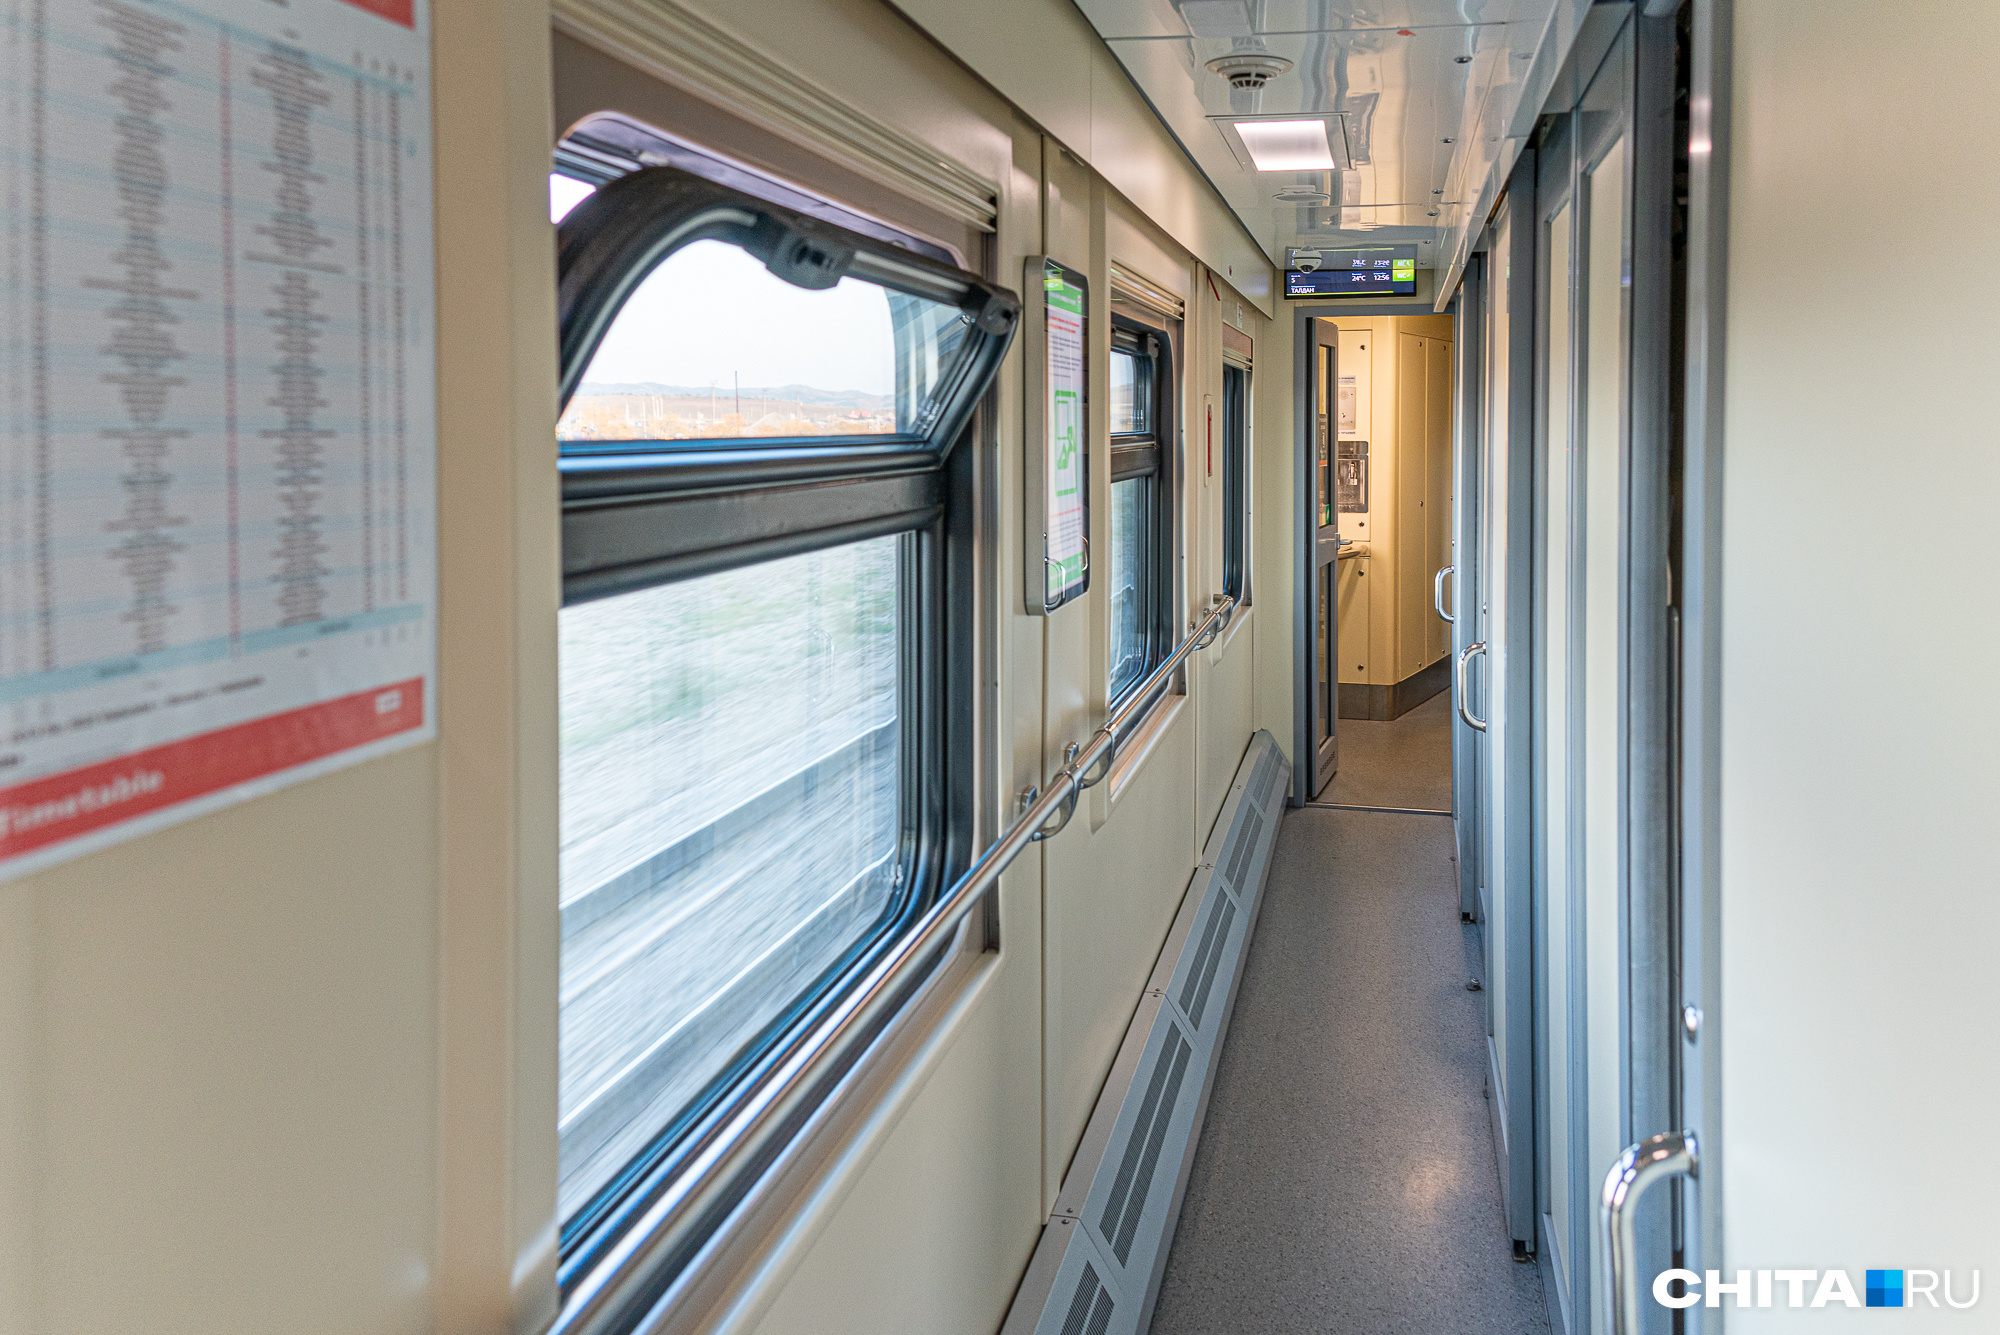 Пассажир из Новосибирска упал в поезде, выходя из туалета. За травмы он отсудил 300 тысяч рублей у РЖД